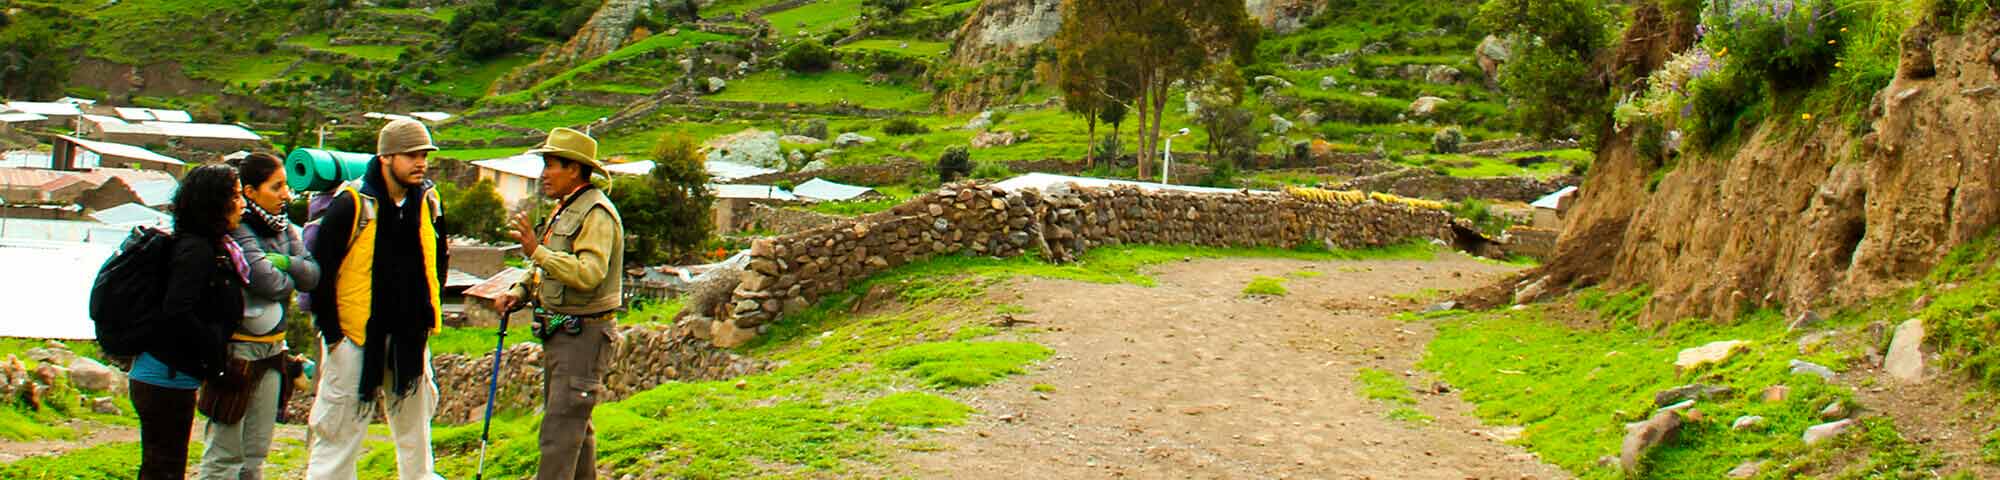 Mirador del Inca y senderos incas